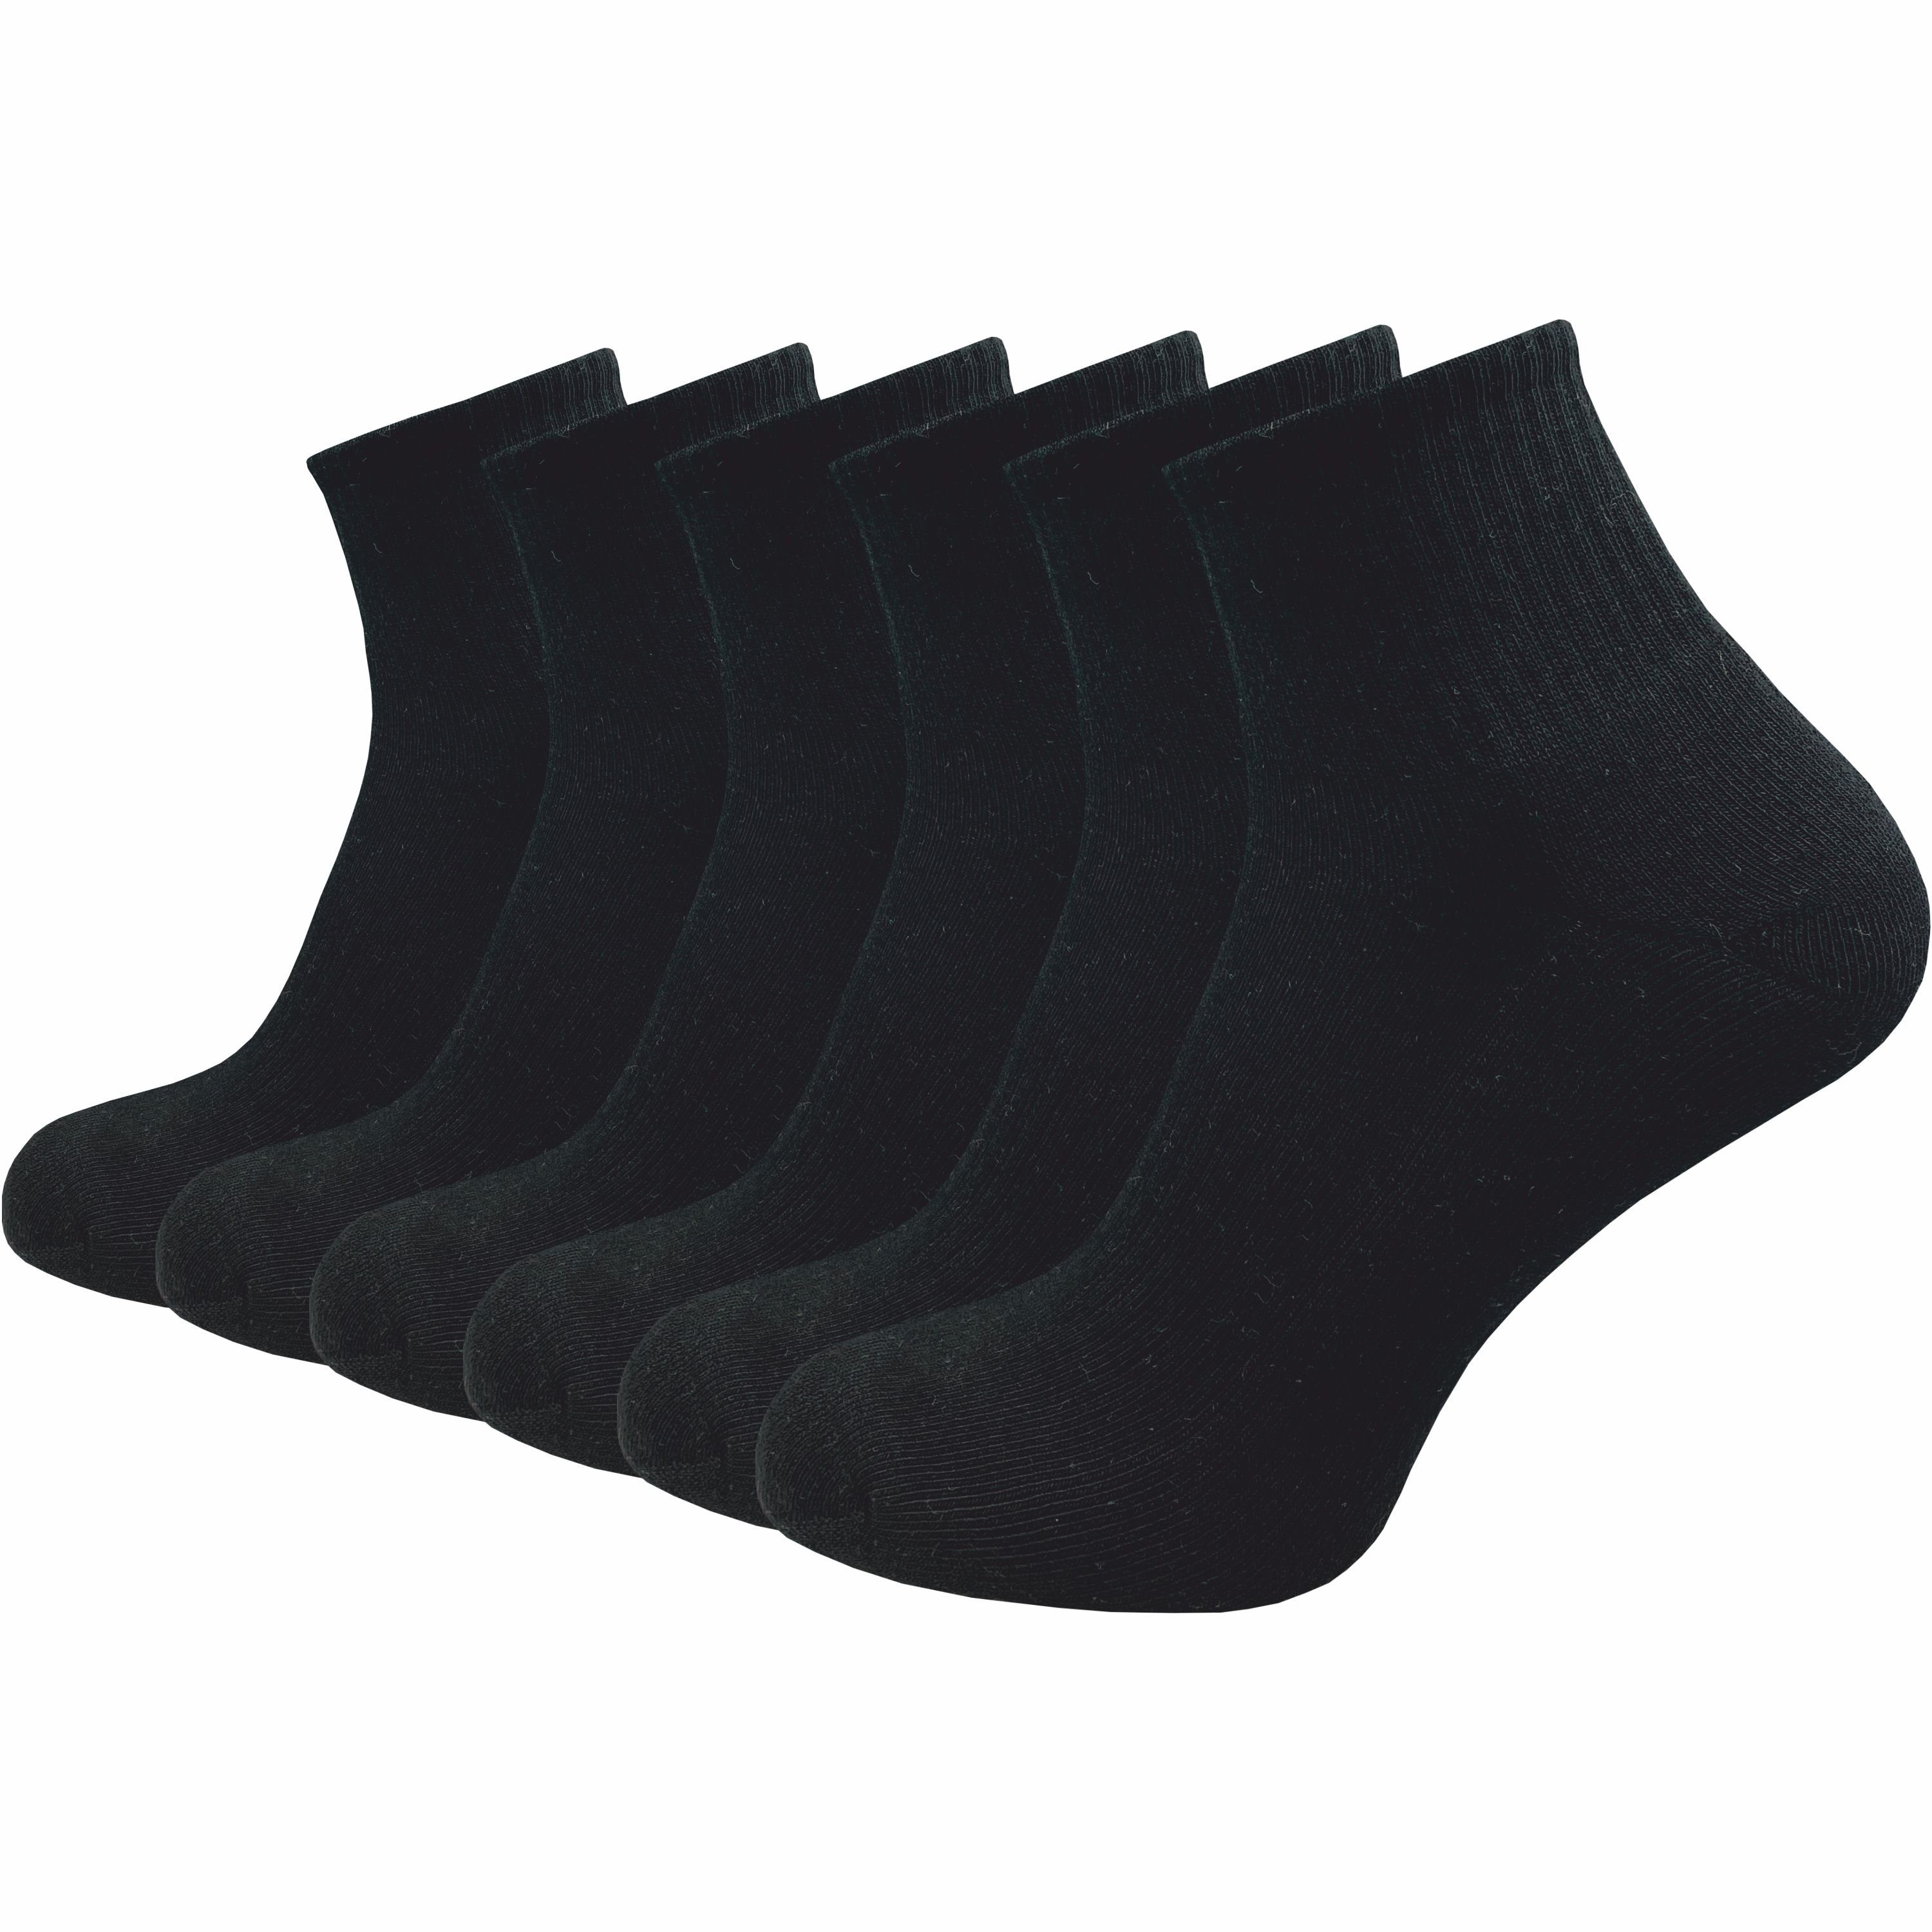 GAWILO Kurzsocken für Damen - Premium Socken für Sport & Freizeit - ohne drückende Naht (6 Paar) in weiß, schwarz & grau; leichte Plüschsohle für höchsten Tragekomfort